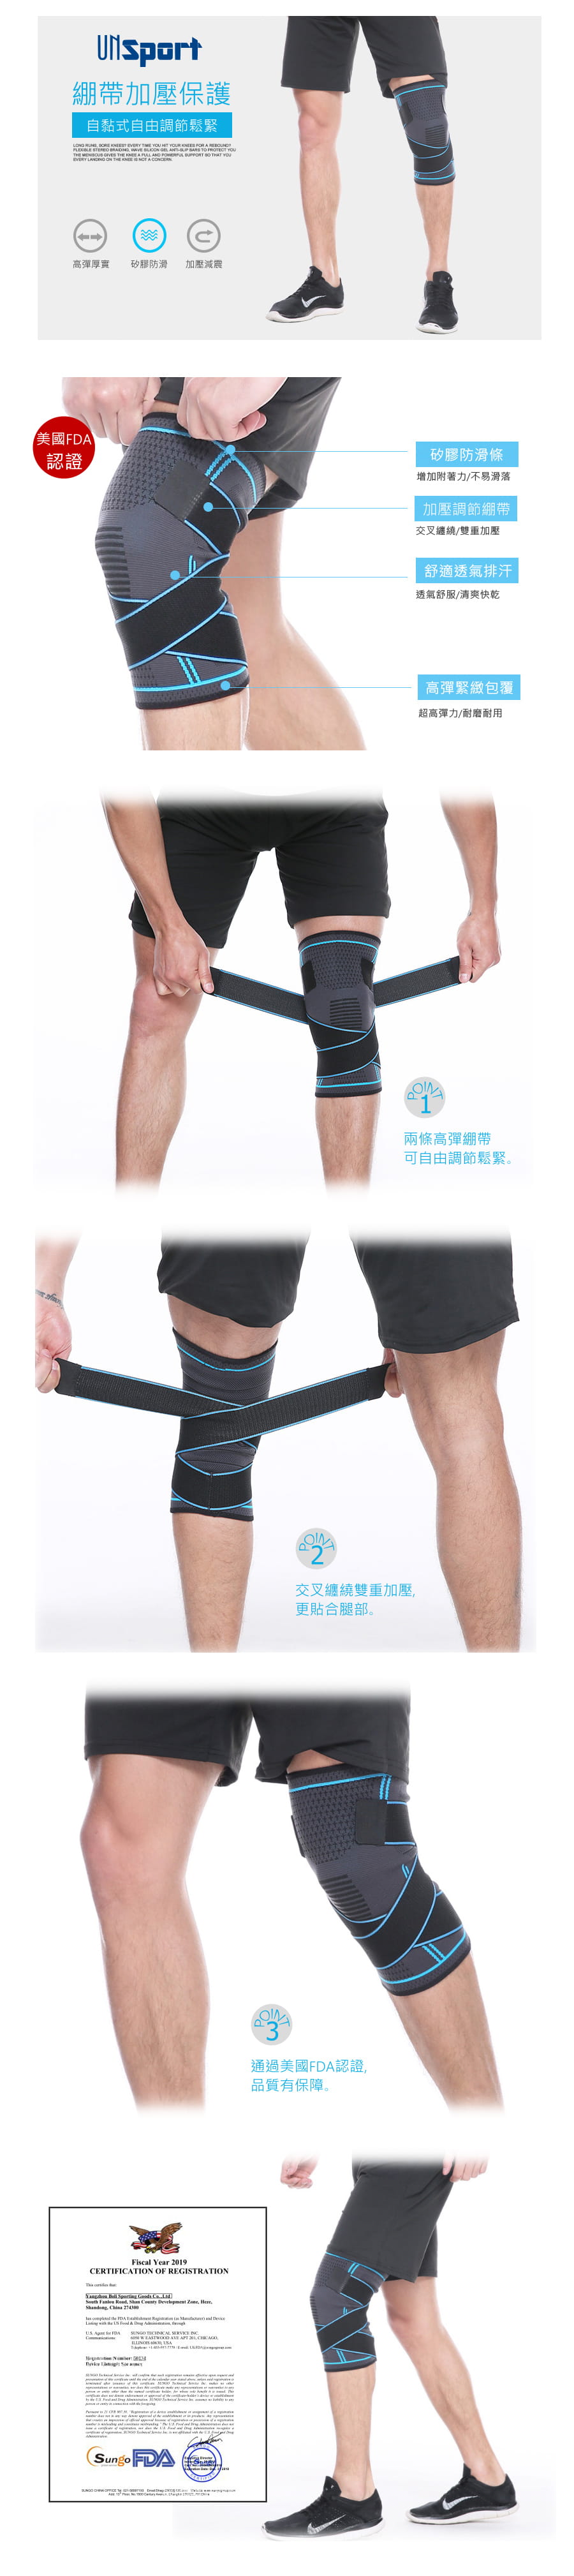 【Un-Sport高機能】美國FDA認證-交叉加壓可調節運動護膝/護具(重訓/跑步) 1